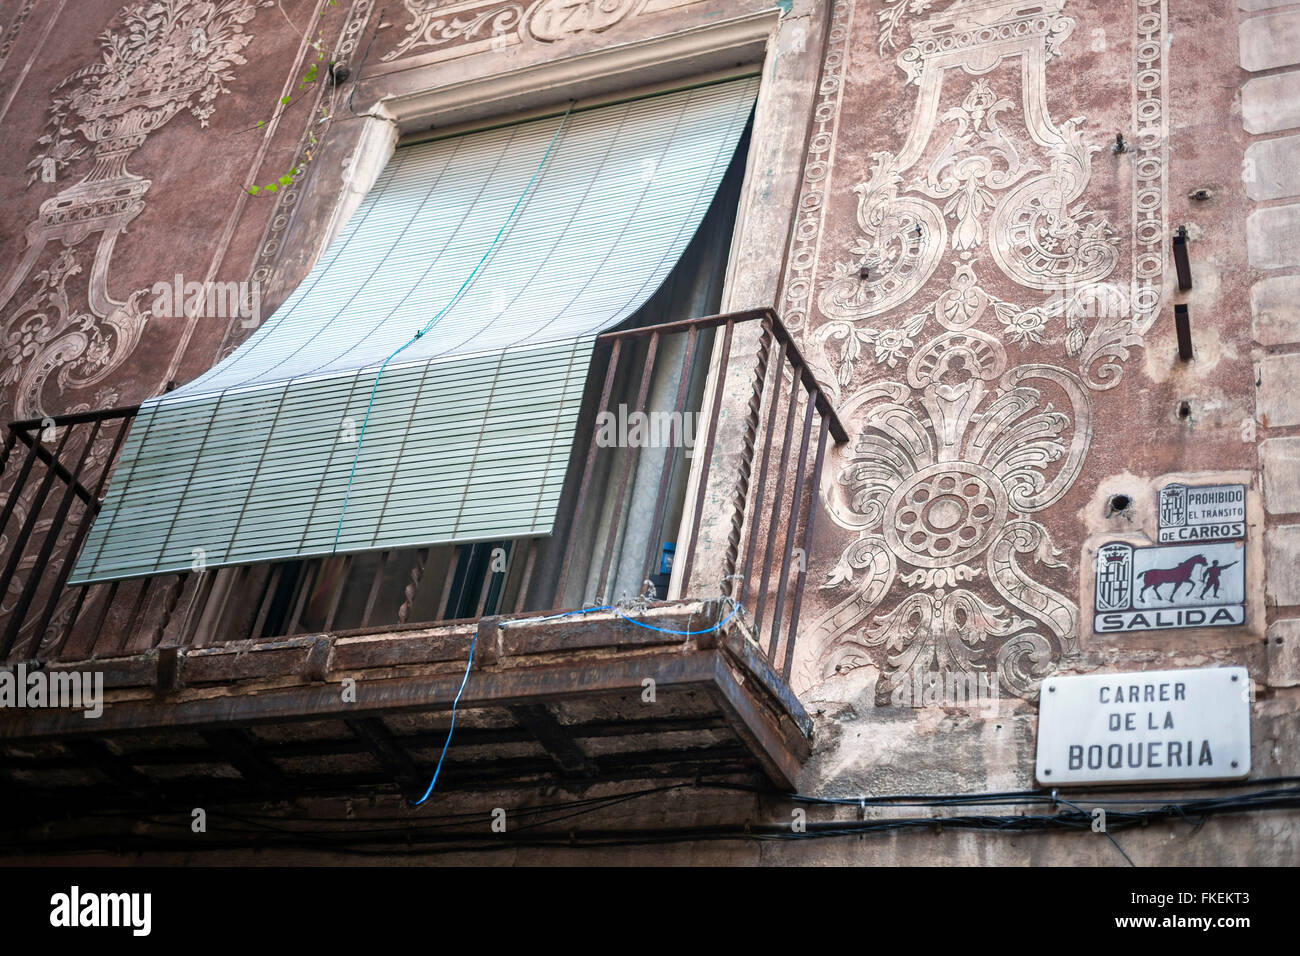 Facade house sgraffito, calle boqueria, Barcelona. Stock Photo